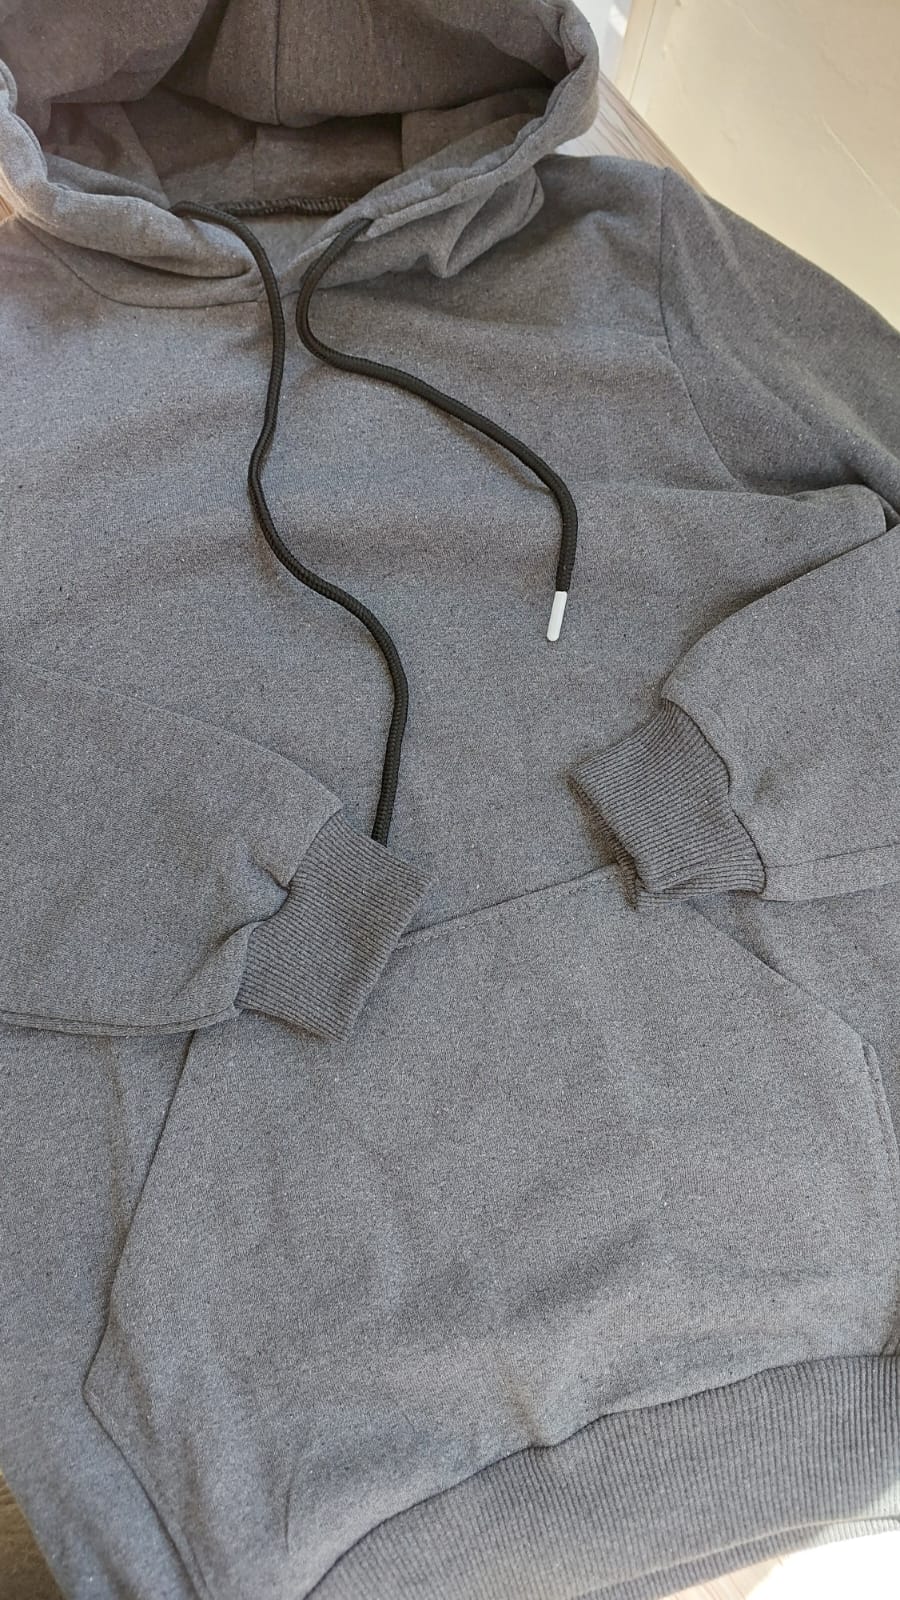 sweatshirt tasarla uygun fiyat yuvarlak yaka iki iplik 7